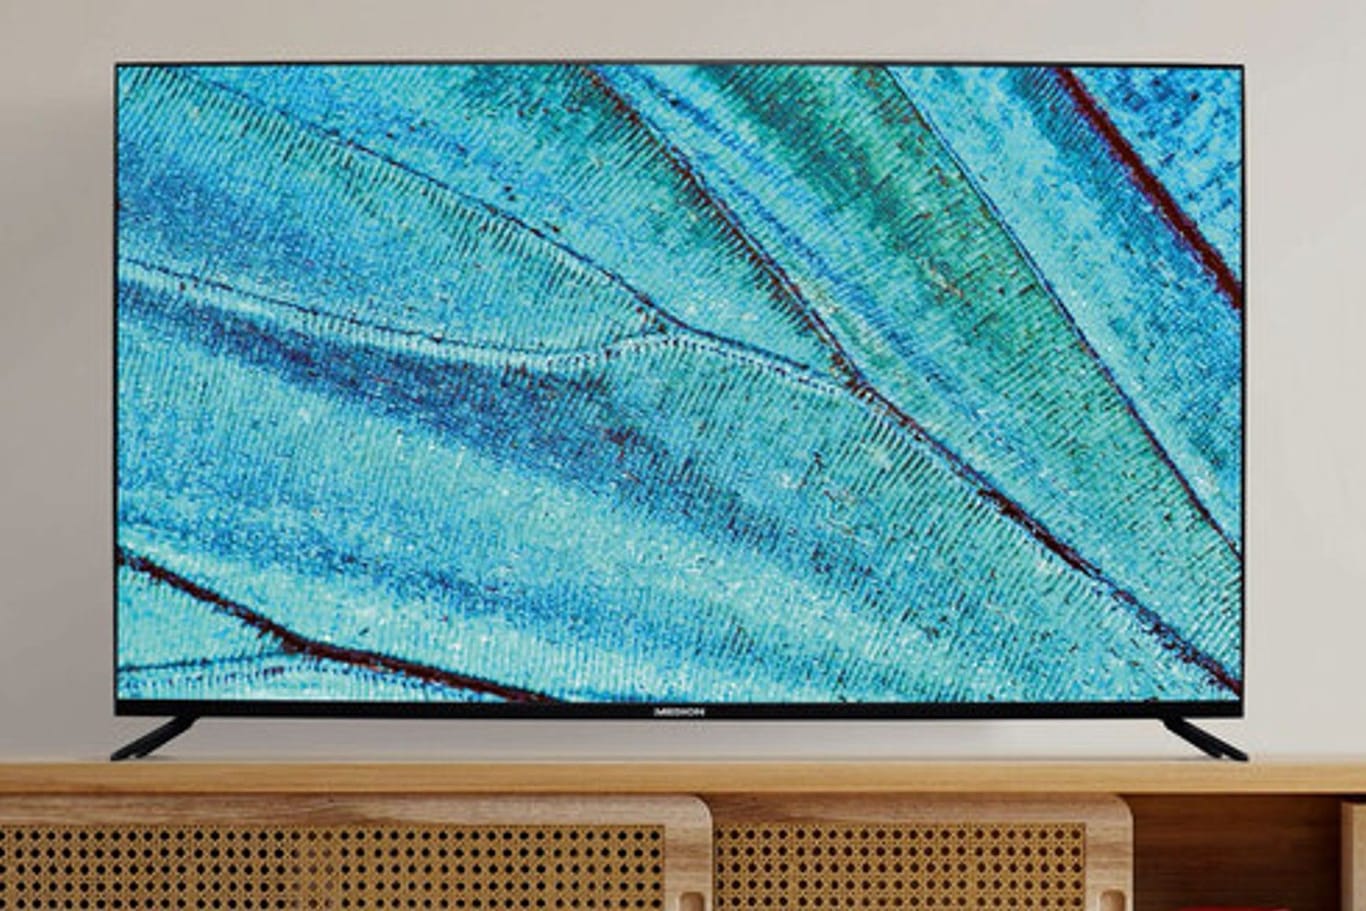 Der Fernseher mit 55 Zoll Diagonale besitzt einen integrierten Triple-Tuner für das TV-Programm.